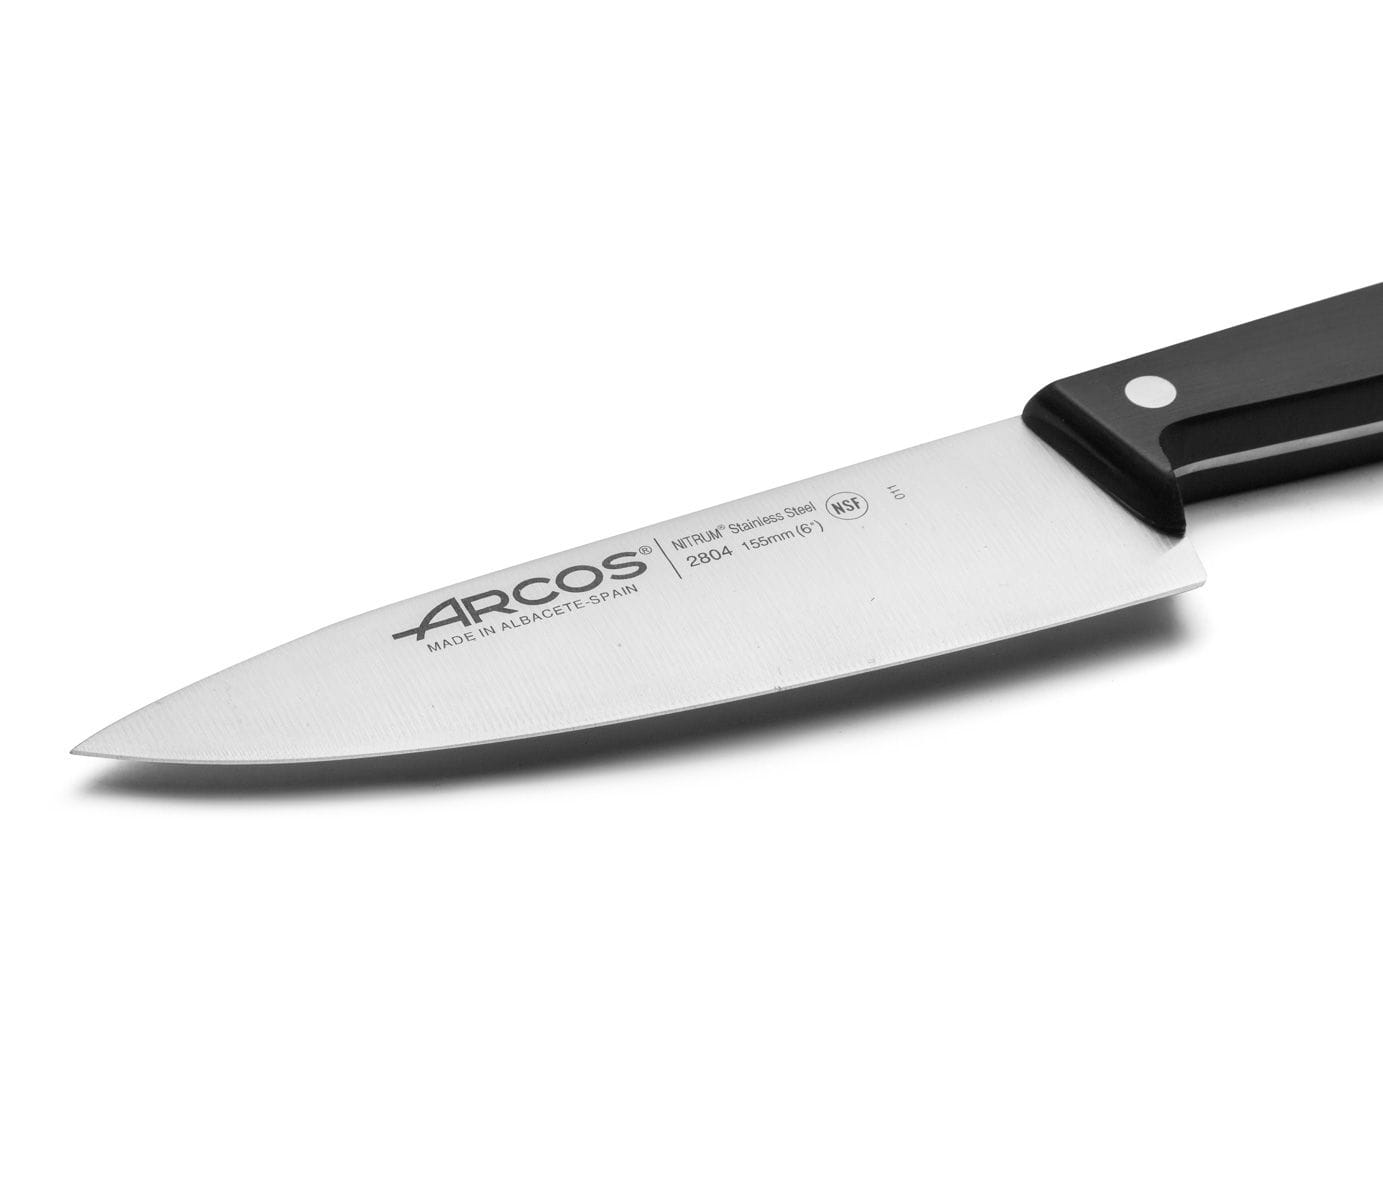 ARCOS 285800 - Juego de 2 Cuchillos de Cocina Profesionales